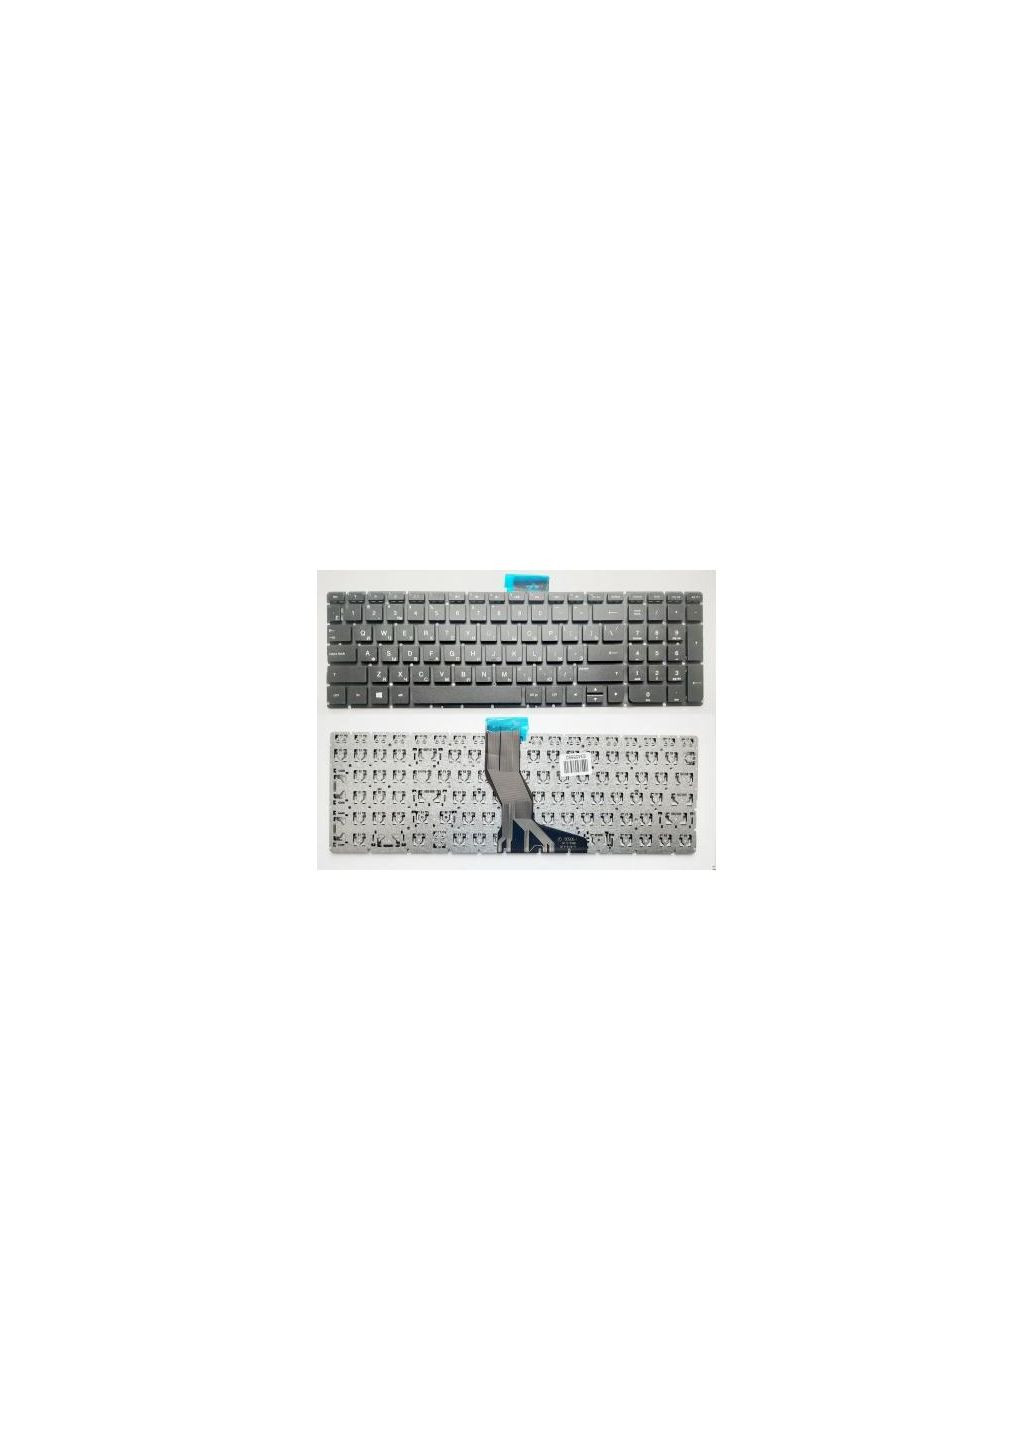 Клавиатура ноутбука Pavilion 15AB,15Z-AB,15-AK,15-BC,17-AB черн (A46019) HP pavilion 15-ab, 15z-ab, 15-ak, 15-bc, 17-ab черн (276706745)